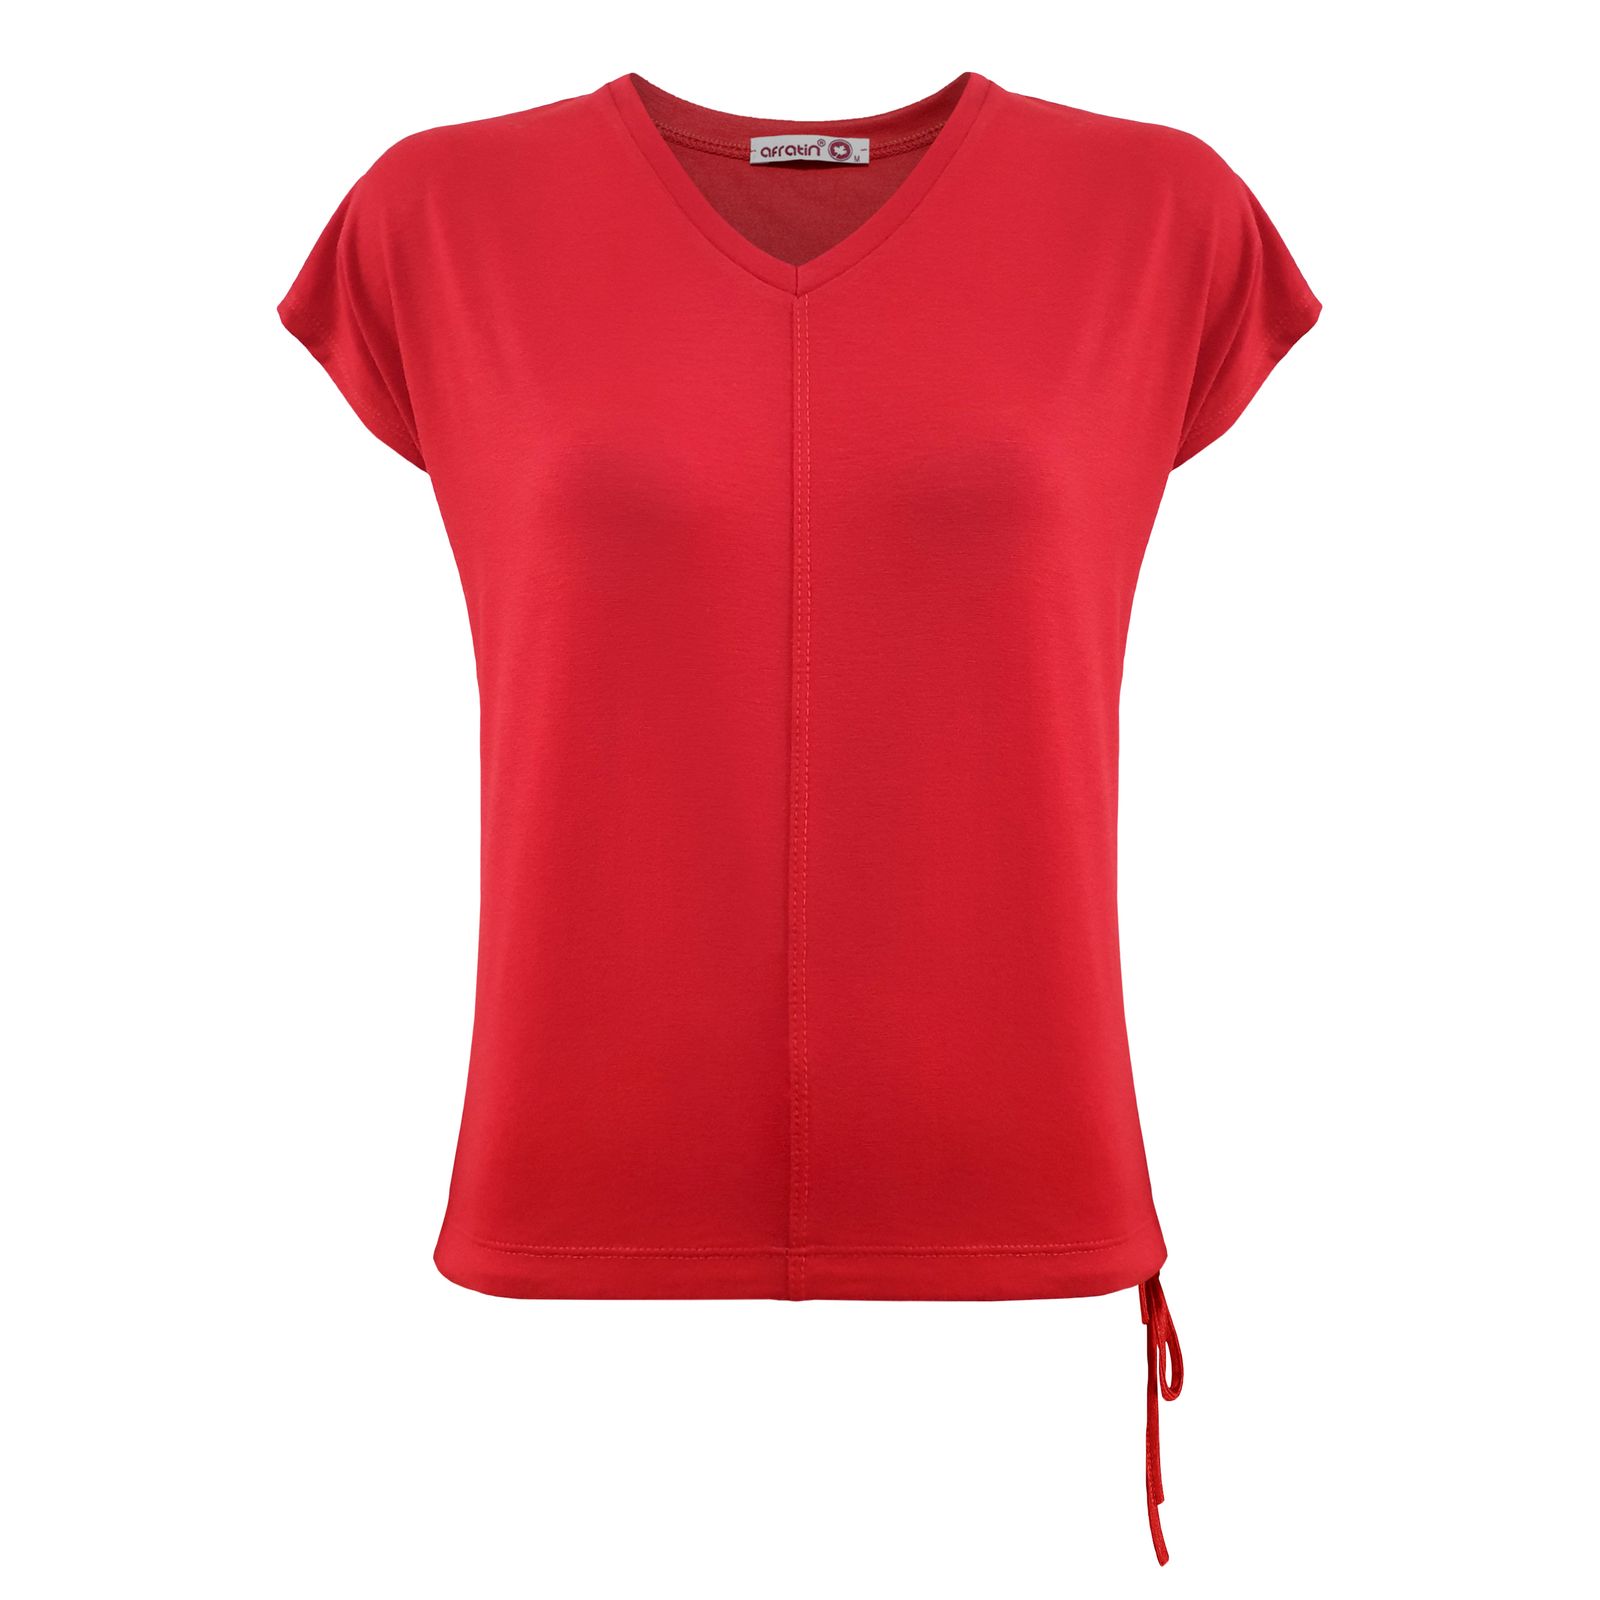 تی شرت زنانه افراتین کد 2544 رنگ قرمز -  - 1